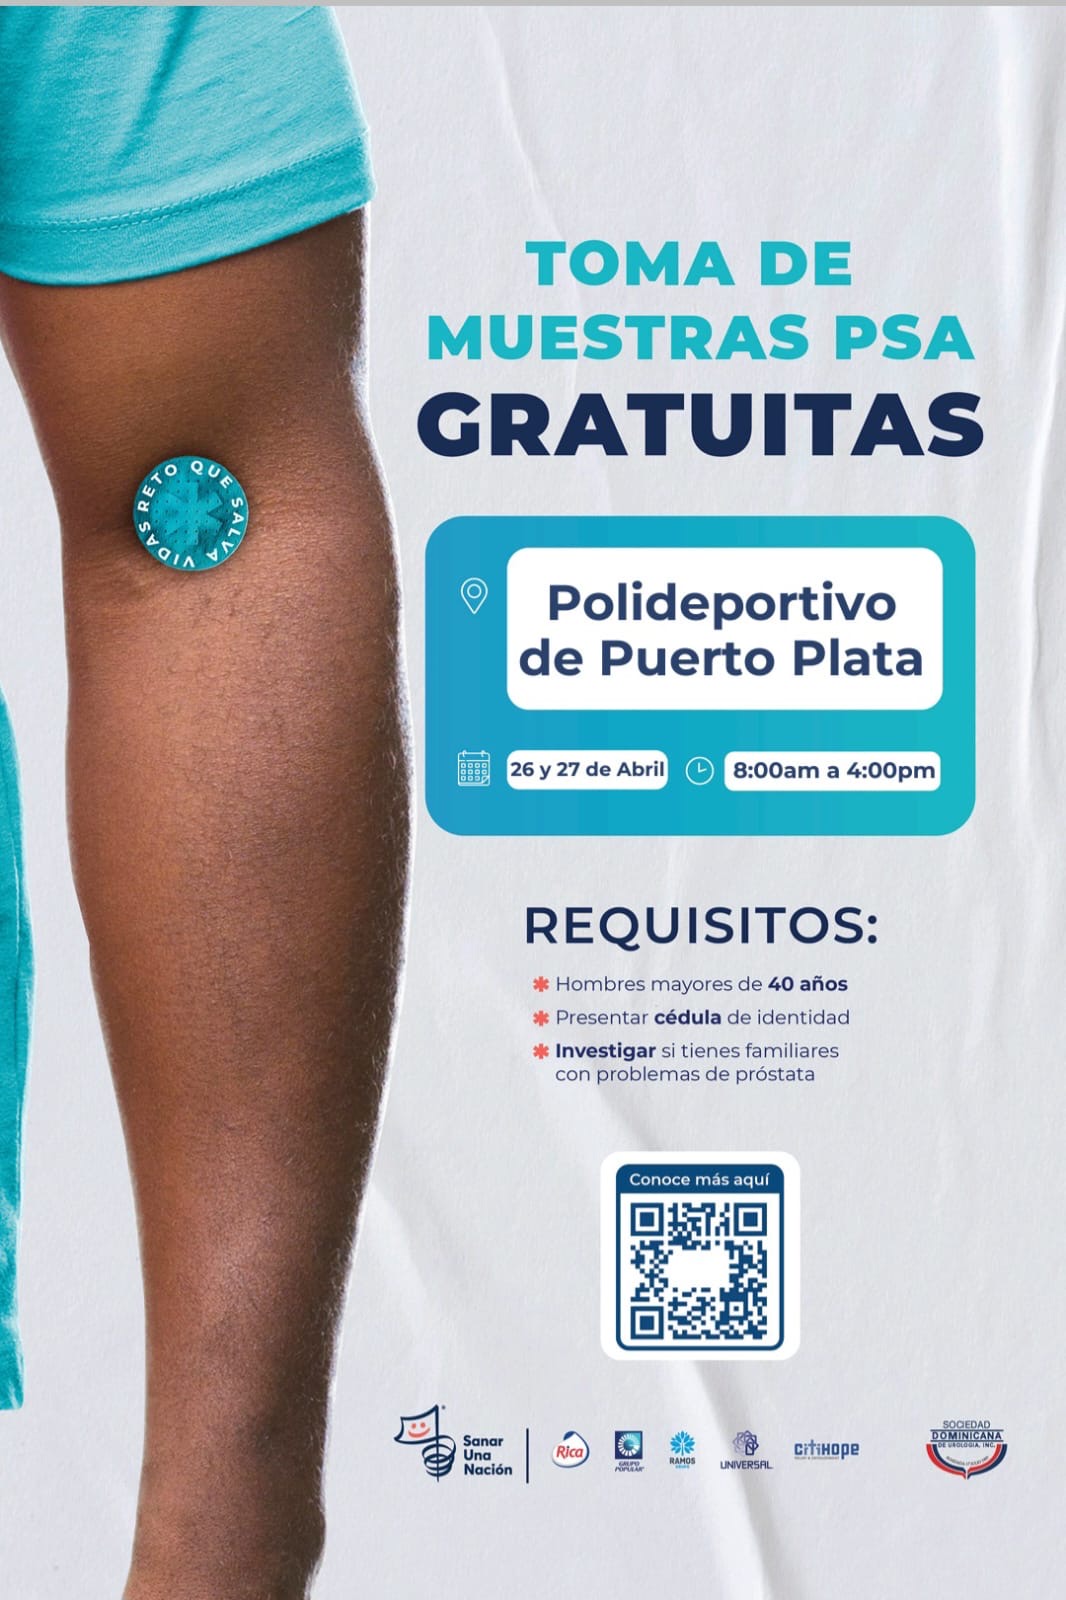    Realizan jornada gratuita toma muestras de antígeno prostático en Polideportivo de Puerto Plata